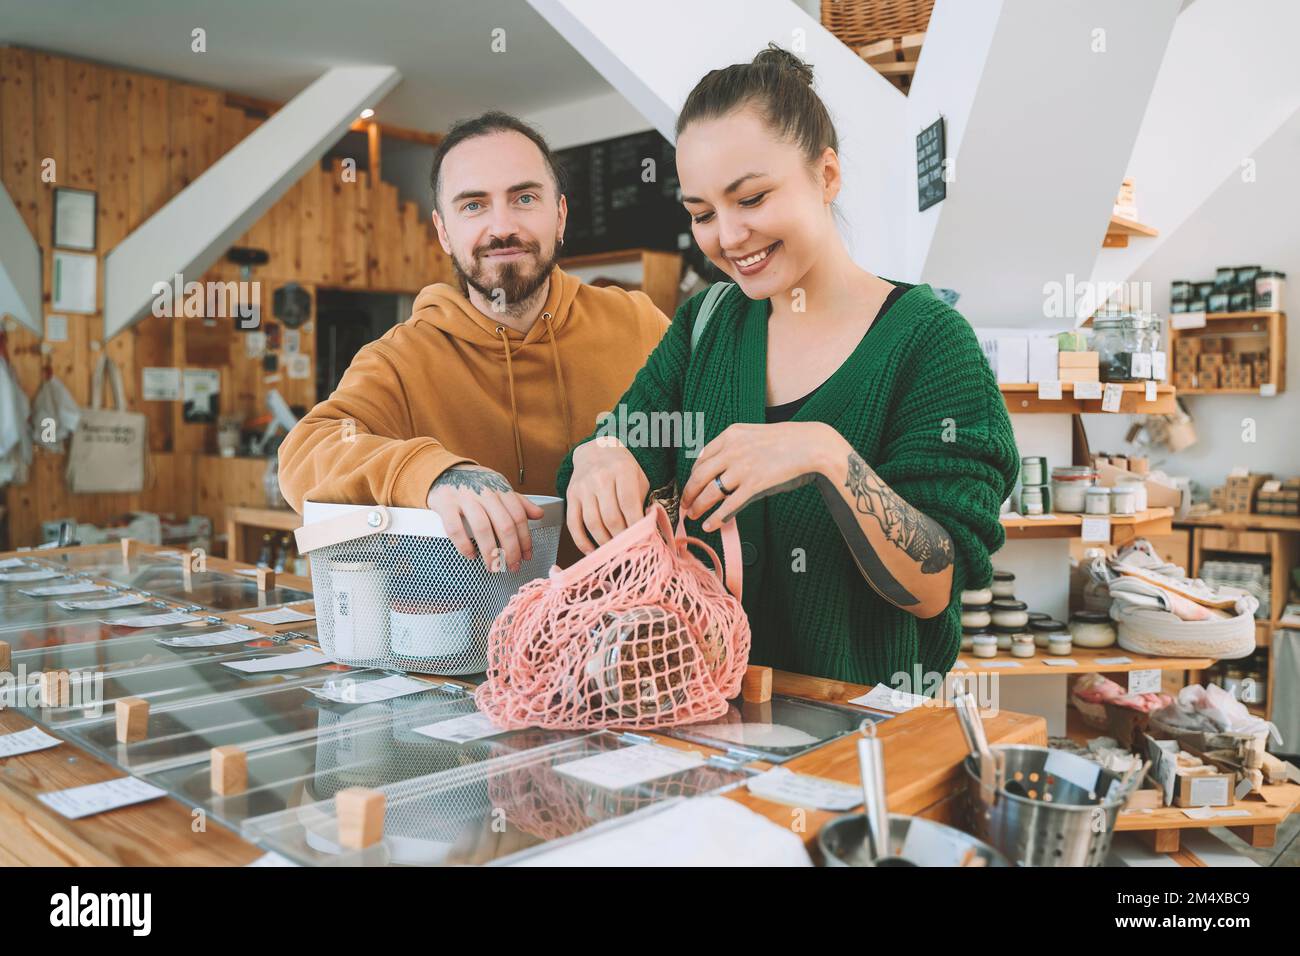 Lächelnde Frau mit Netztasche von Mann an der Theke im Supermarkt Stockfoto